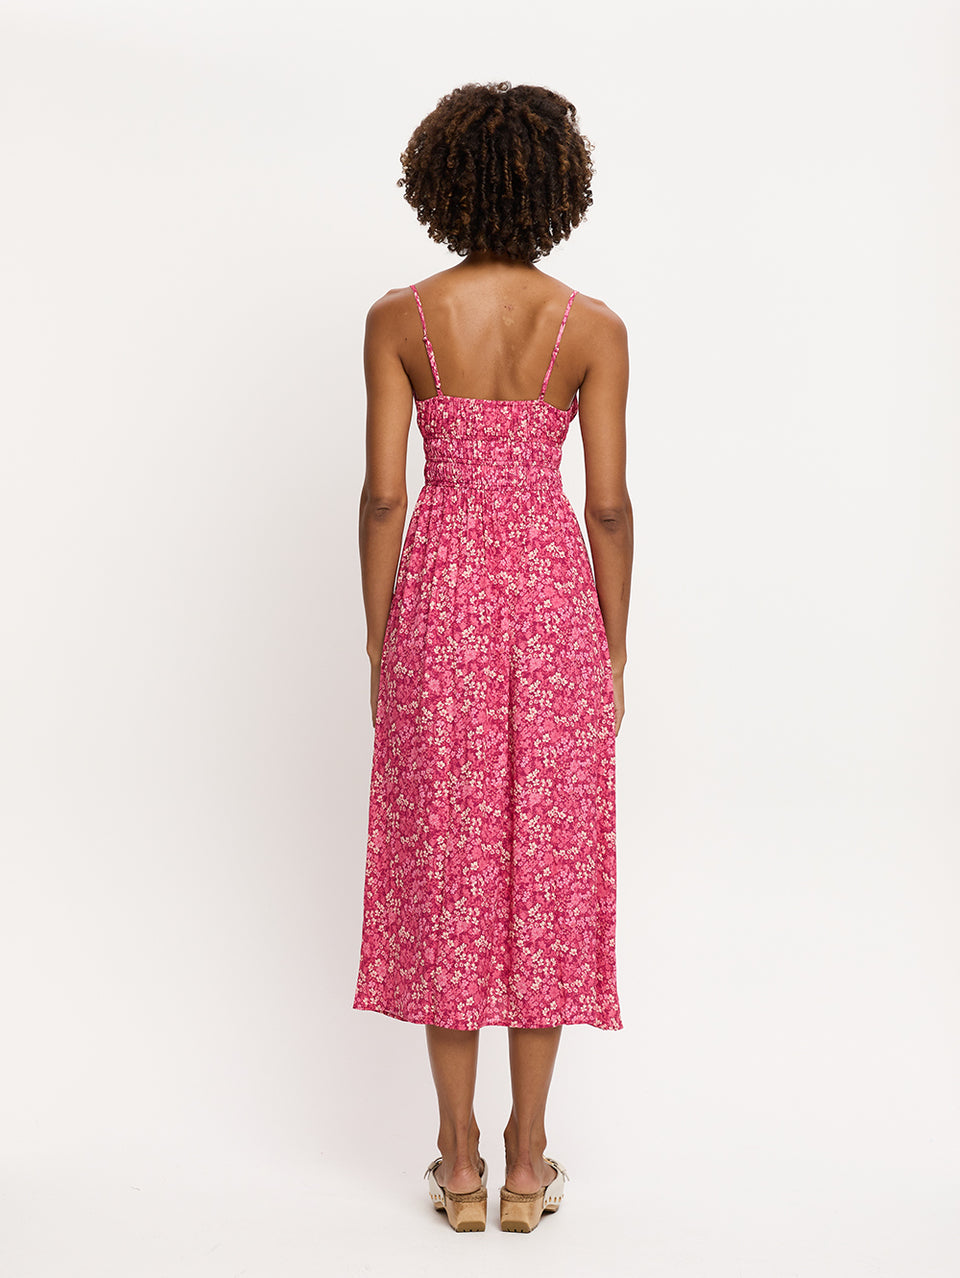 Tamara Strappy Midi Dress KIVARI | Model wears pink floral midi dress back view